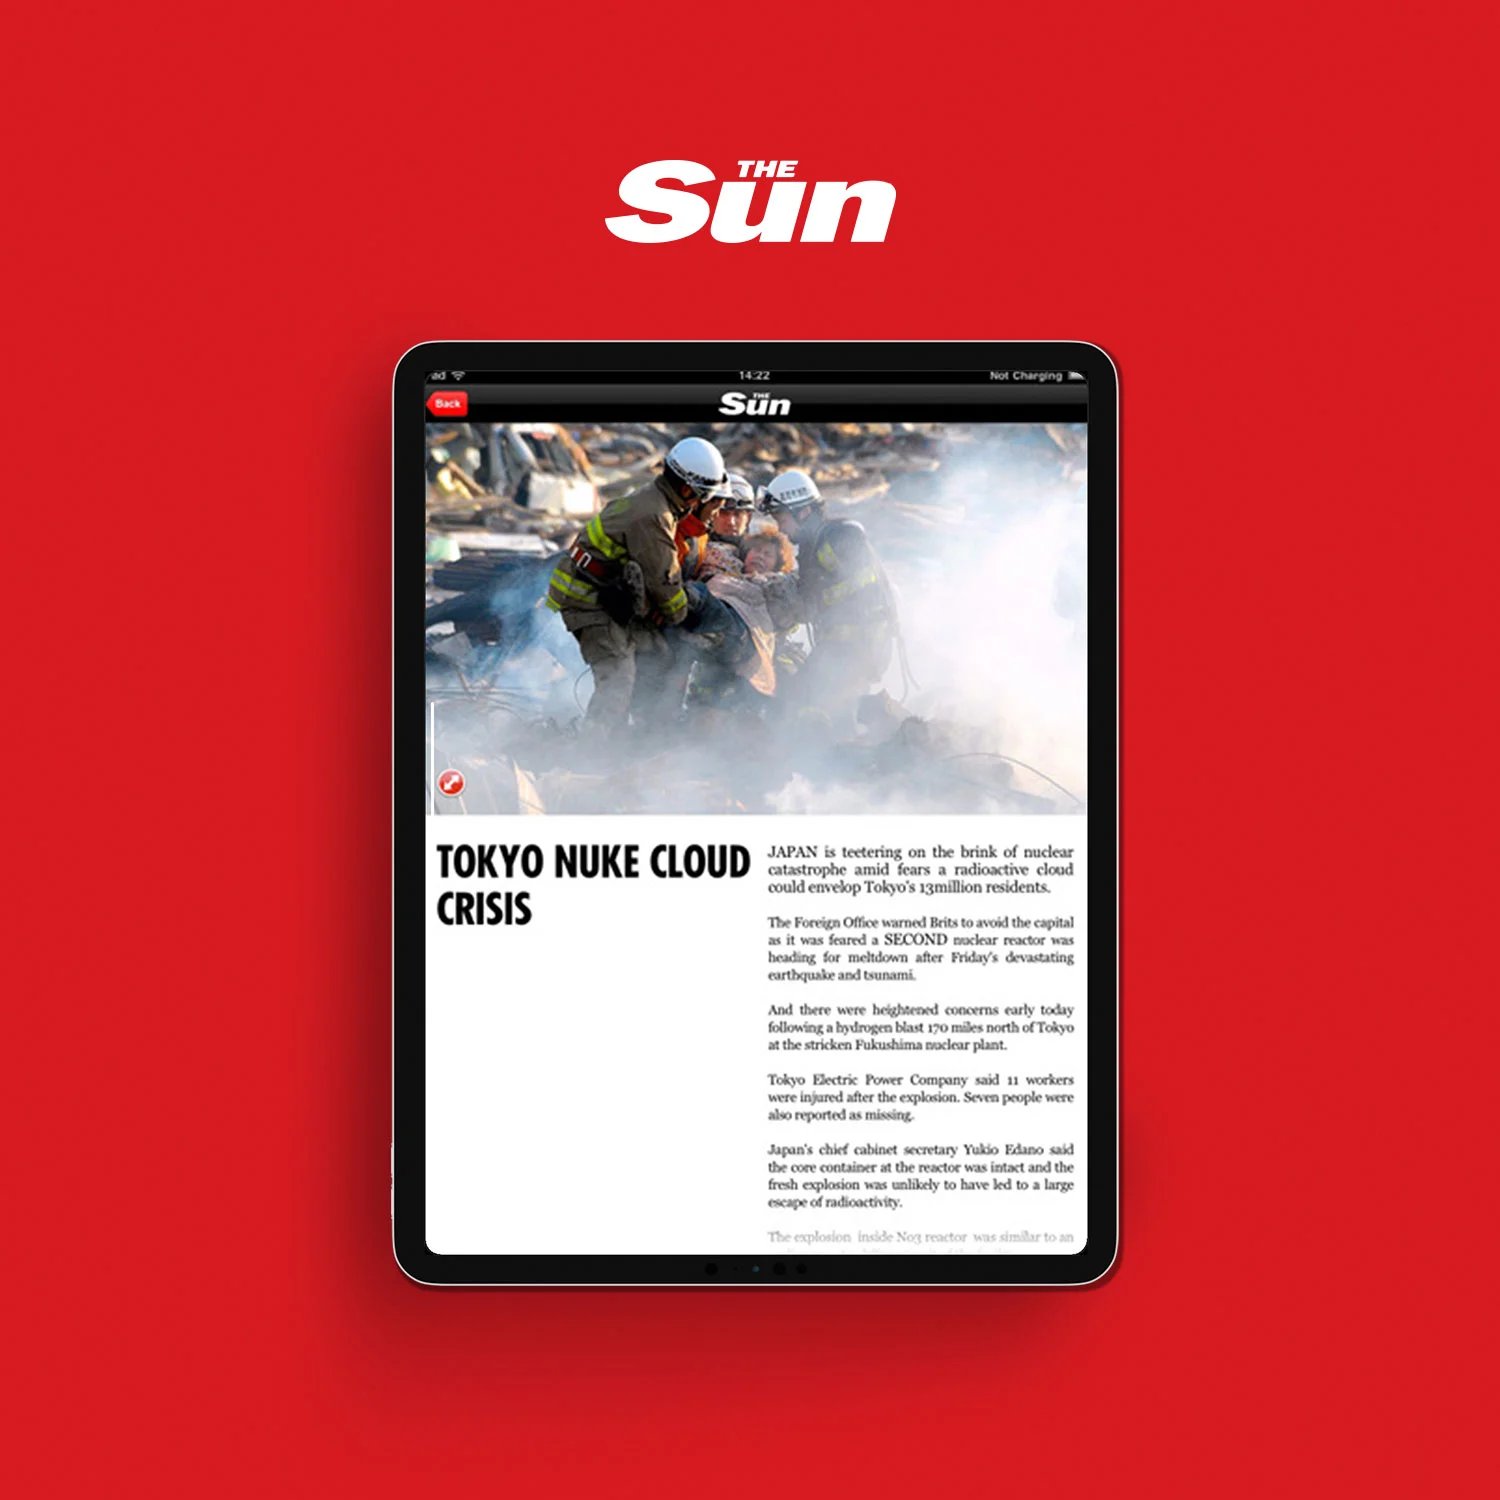 The Sun mobile app